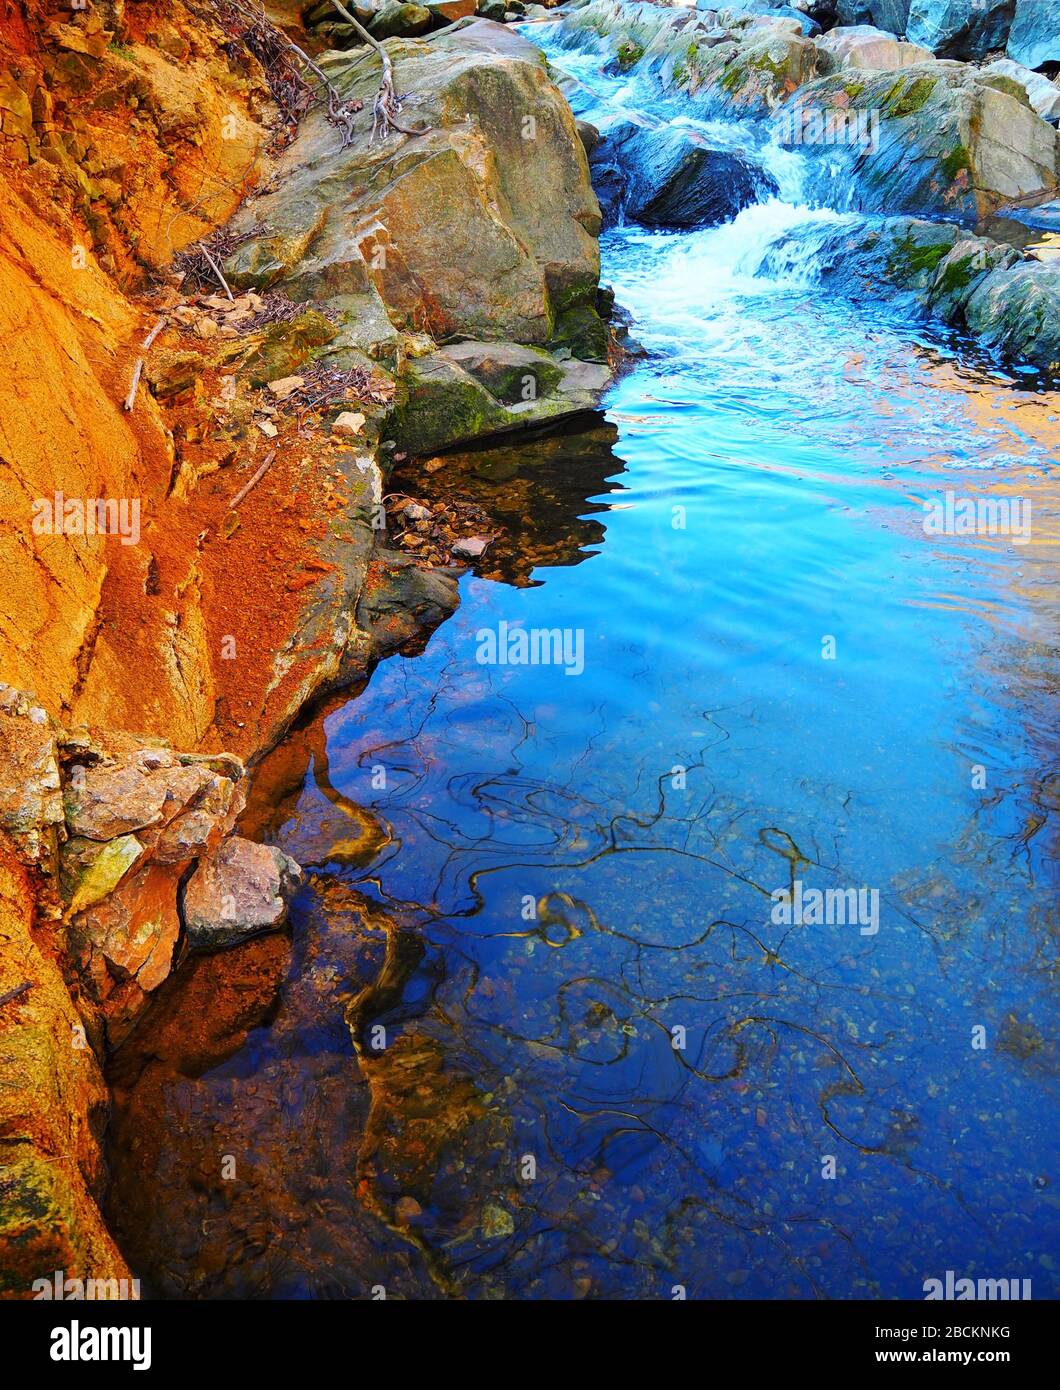 Une piscine d'eau bleu vif reflète des branches d'arbres tordues juste en dessous de quelques rapides dans un ruisseau avec de grandes roches cachées de mousse sur une journée d'hiver brillante. Banque D'Images